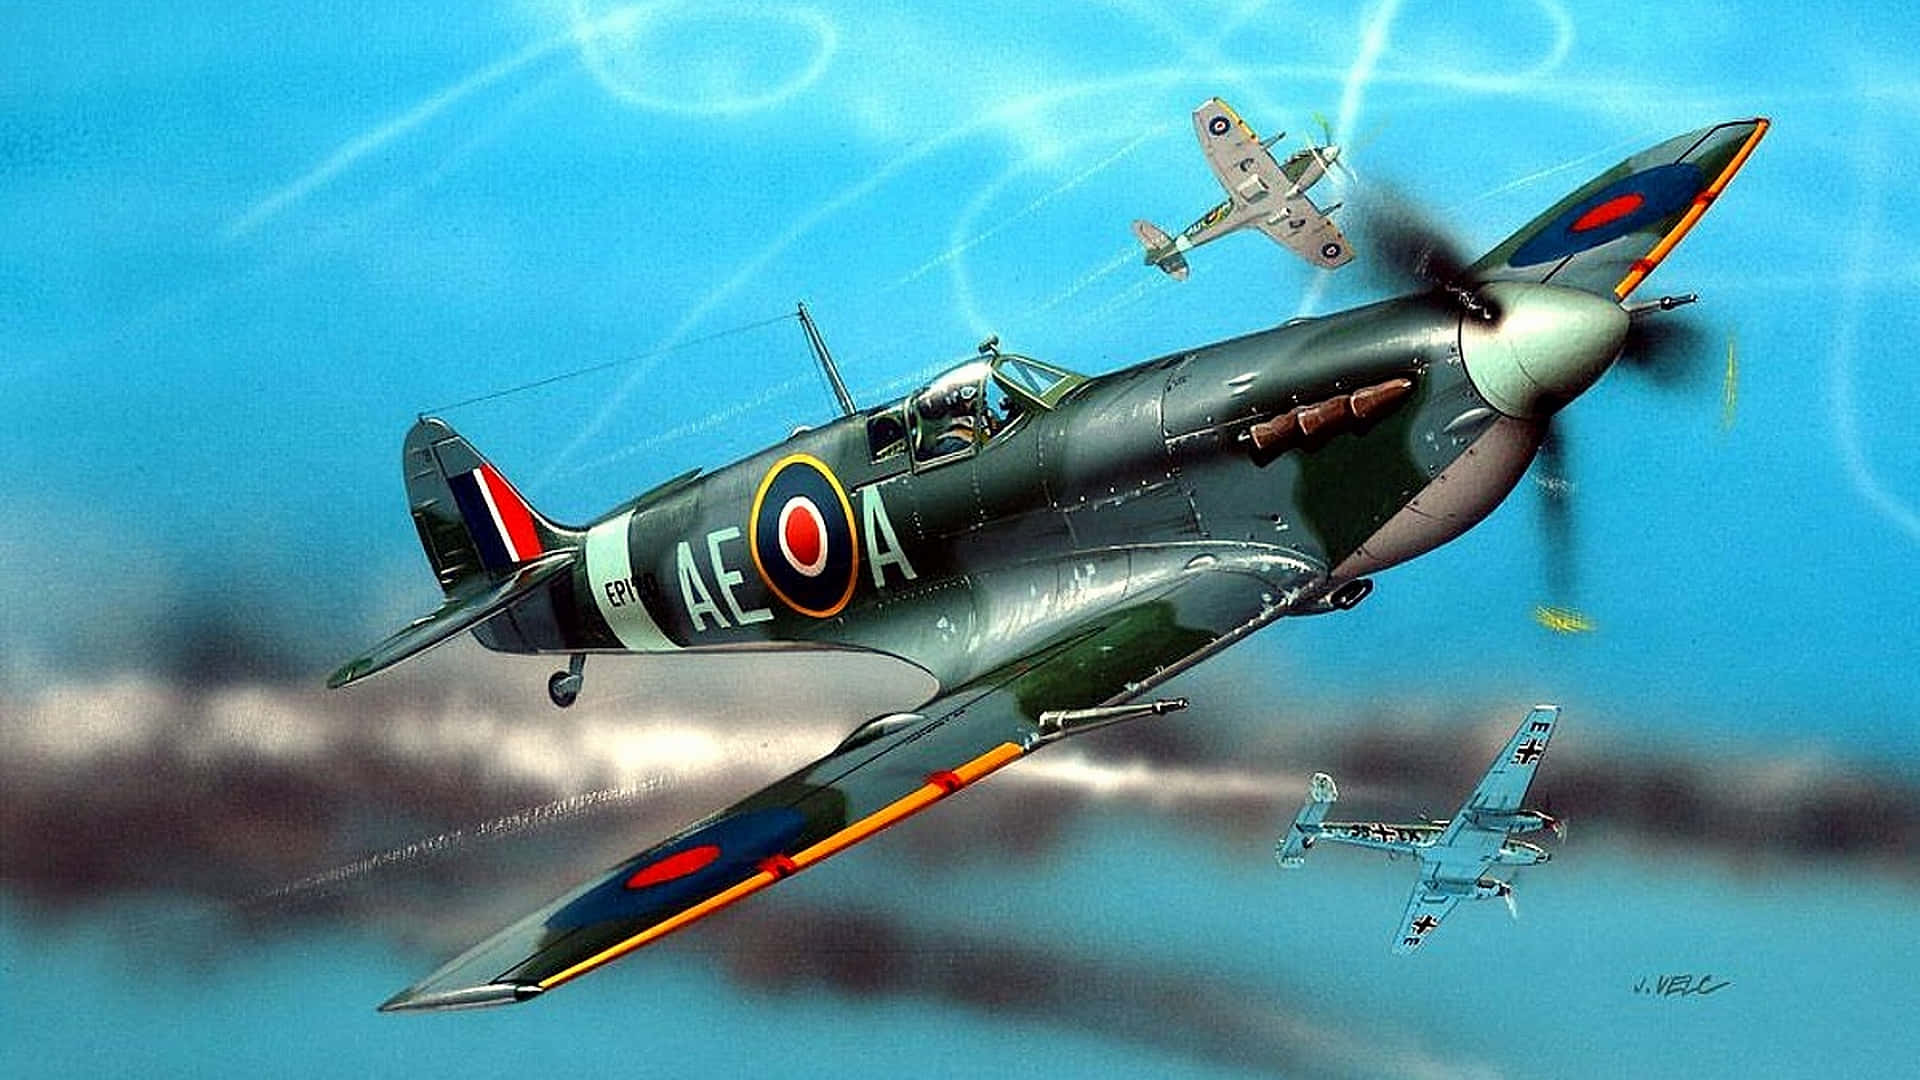 "Classic British Icon: A Spitfire Plane in Flight" Wallpaper